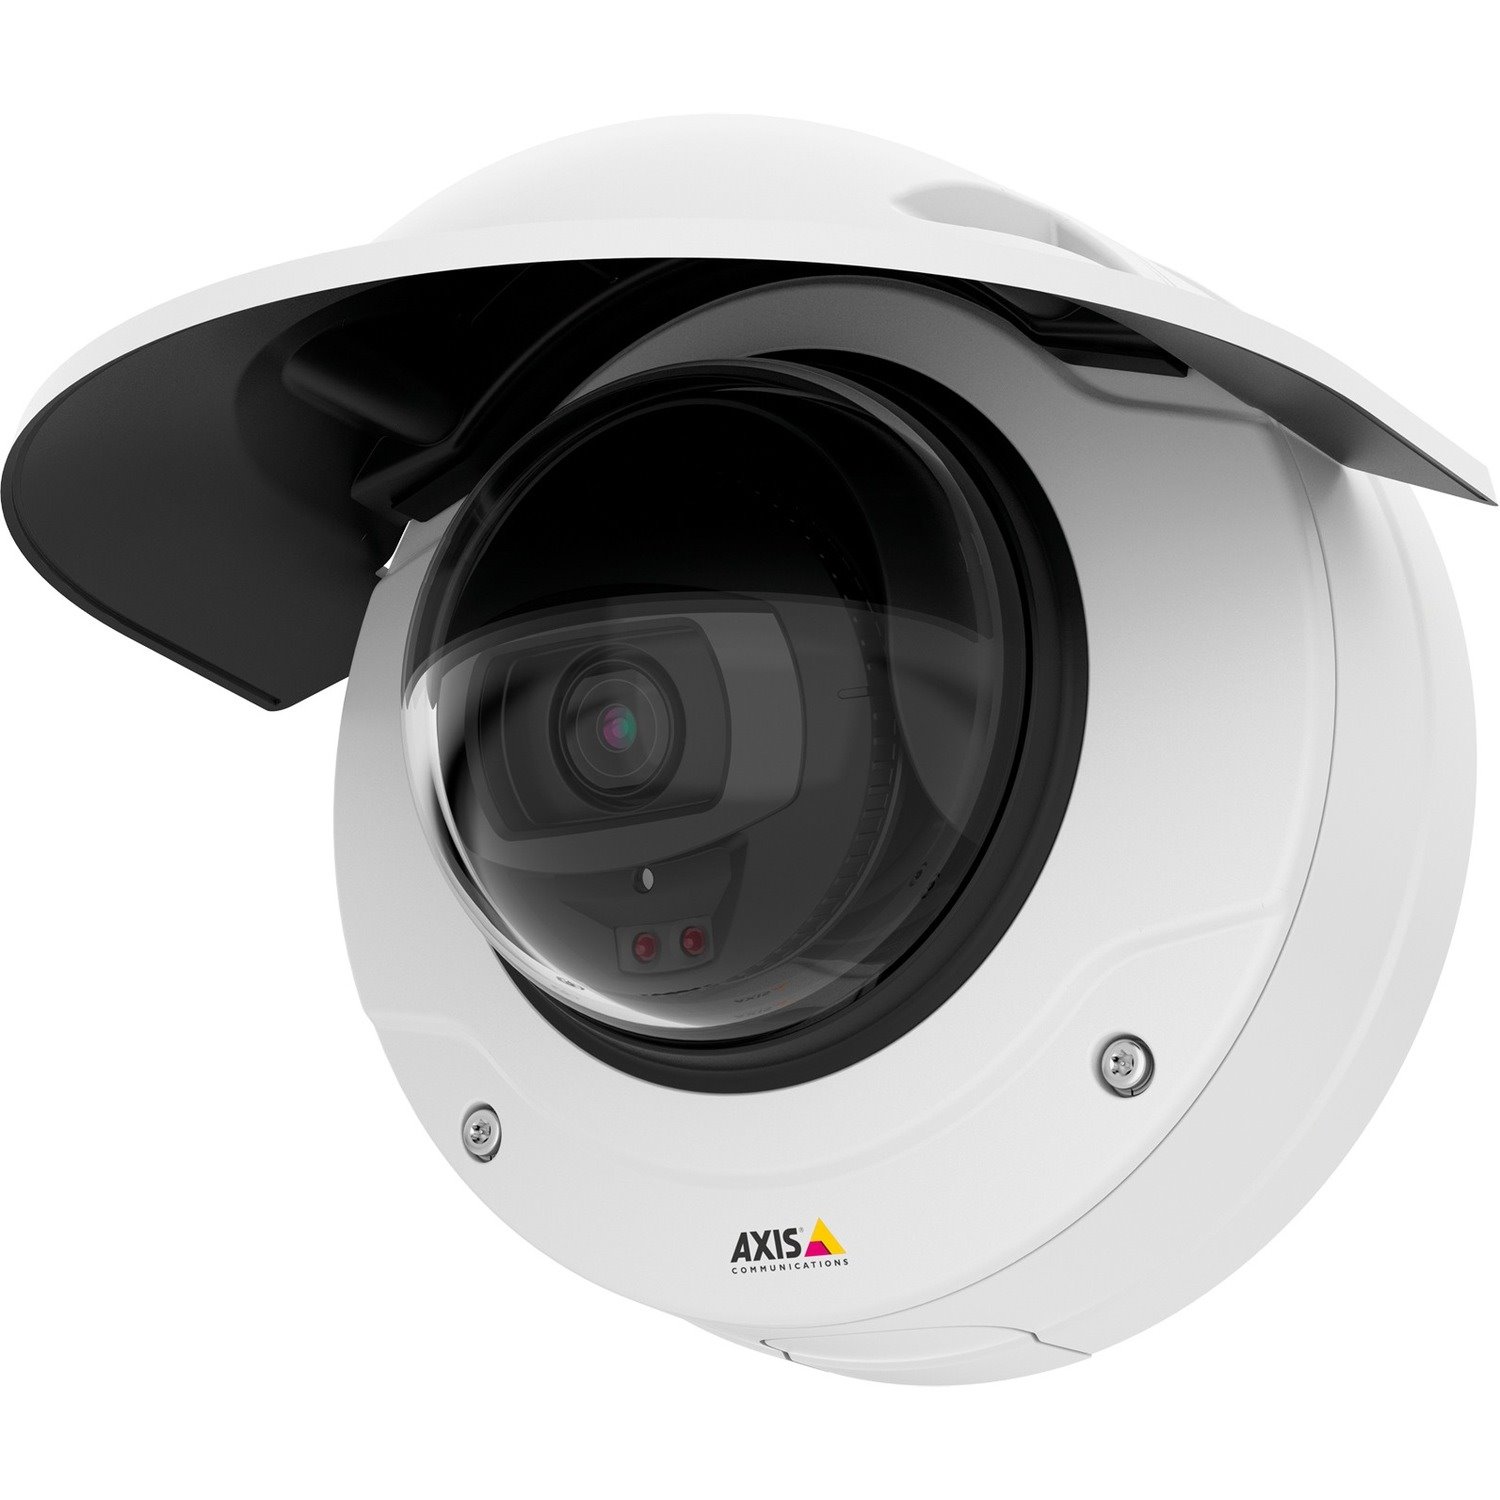 AXIS Q3527-LVE 5 Megapixel HD Network Camera - Dome